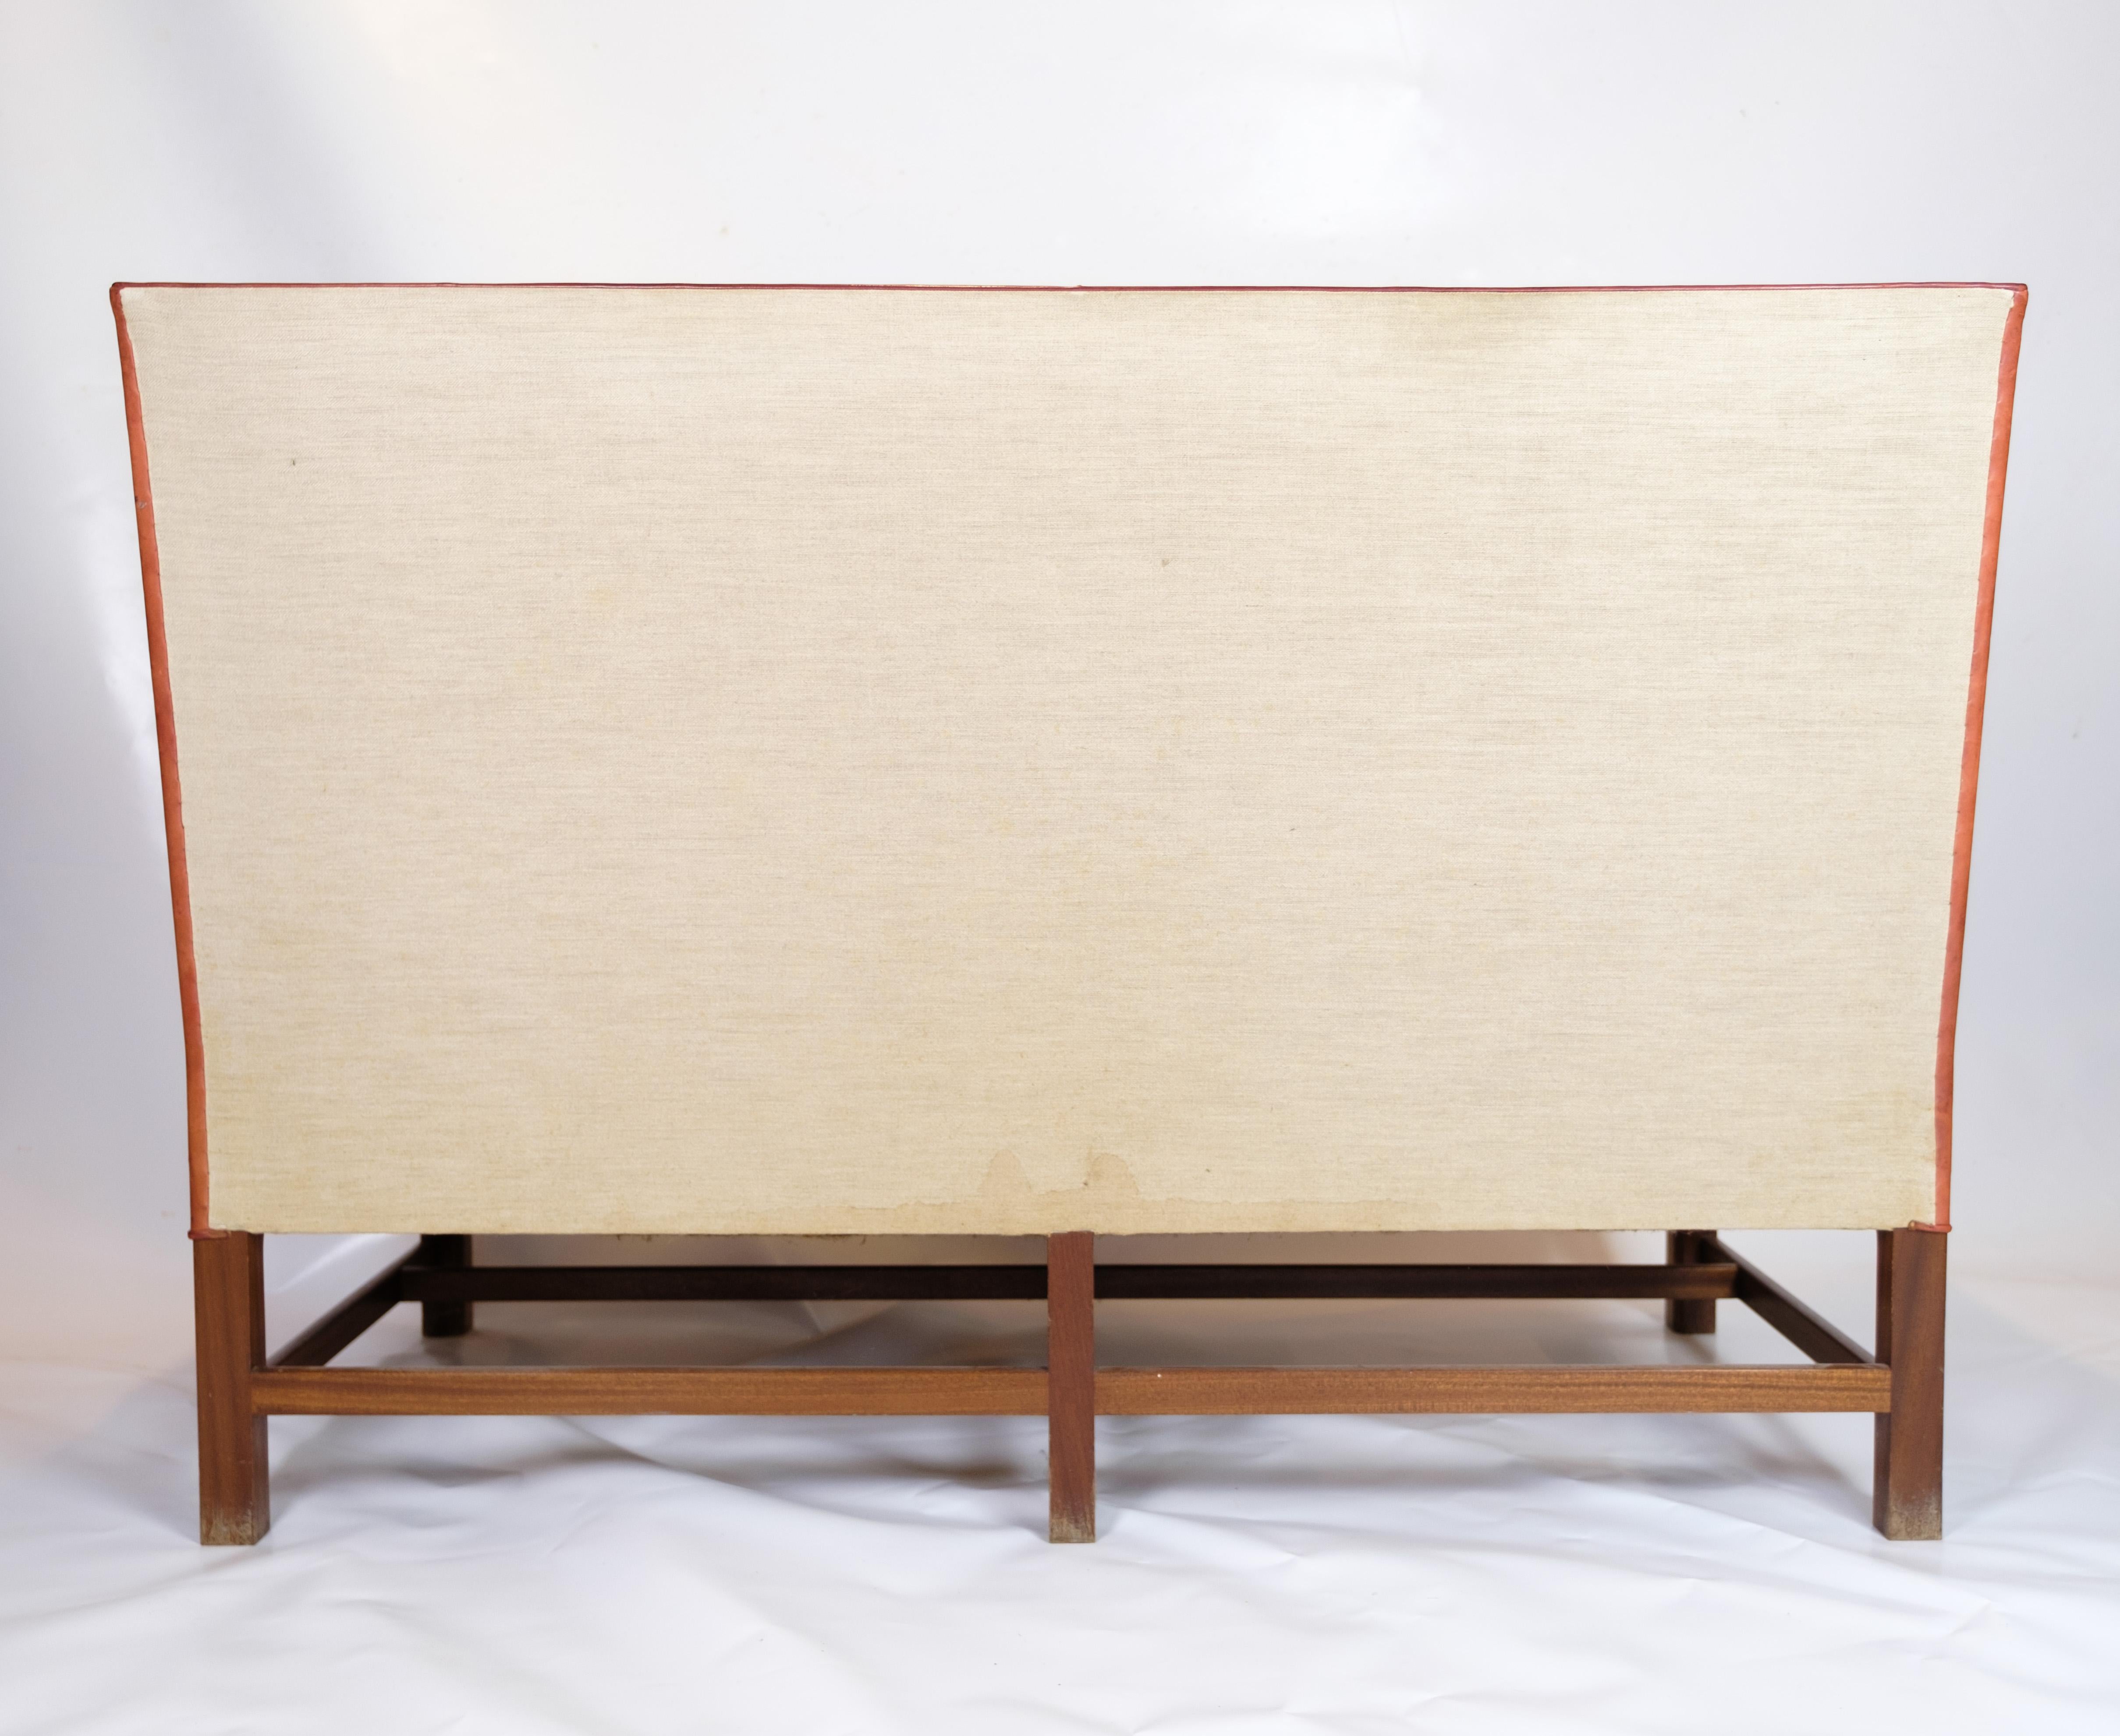 Das Zweisitzer-Sofa im Vintage-Design, Modell 5011, wurde von Kaare Klint entworfen. Dieses kultige Stück ist aus original cognacfarbenem Leder gefertigt und verfügt über einen unverwechselbaren sechsbeinigen Mahagonisockel. Das Sofa wurde 1935 auf